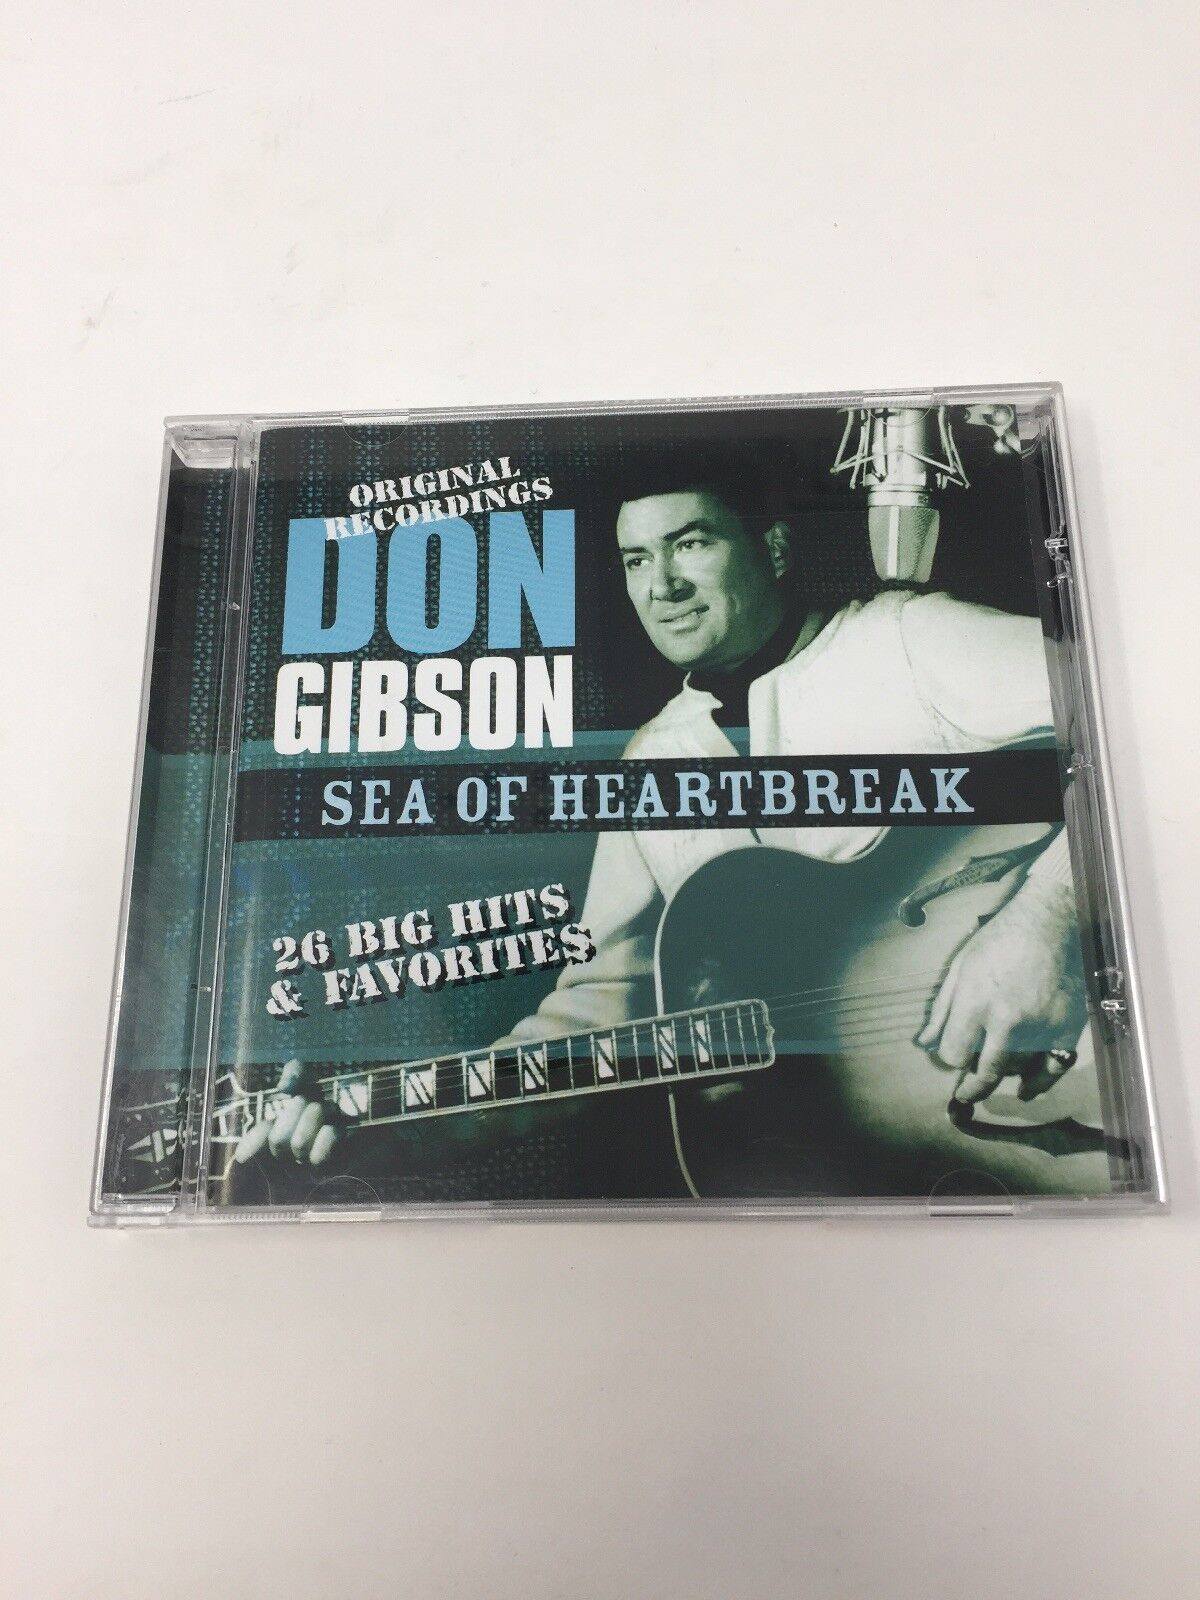 Don Gibson Sea of Heartbreak Original Recordings 26 Big Hits & Favorites CD